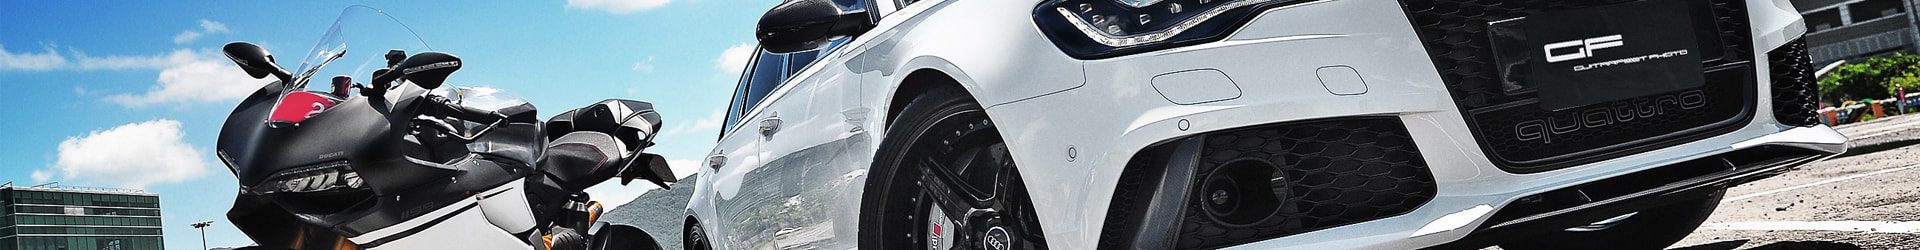 美斜勢力 – Audi Q3 Sportback 35 TFSI S-Line 強型出擊 圖文分享 By 吉他腳 GuitarFeet